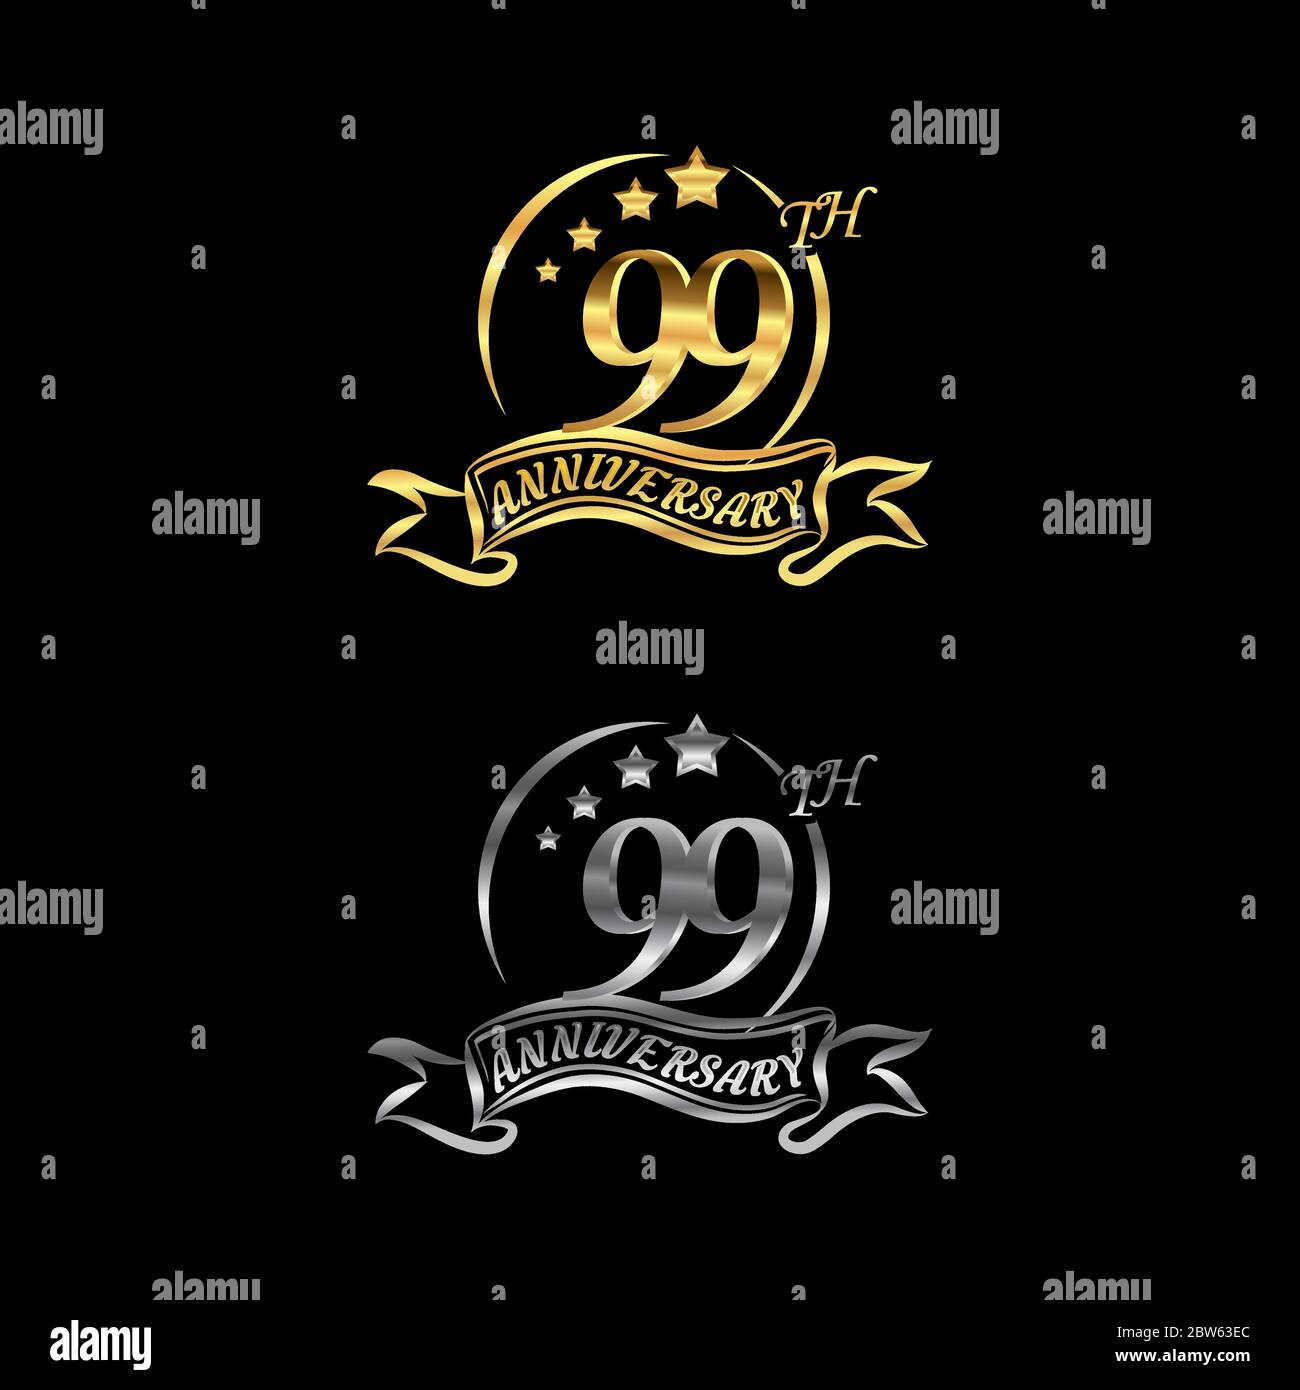 Feiern Sie das 99. Jubiläum Logo, Sternform, mit Gold und Silber Ringe und Abstufung Bänder isoliert auf einem schwarzen Hintergrund.EPS 10 Stock Vektor